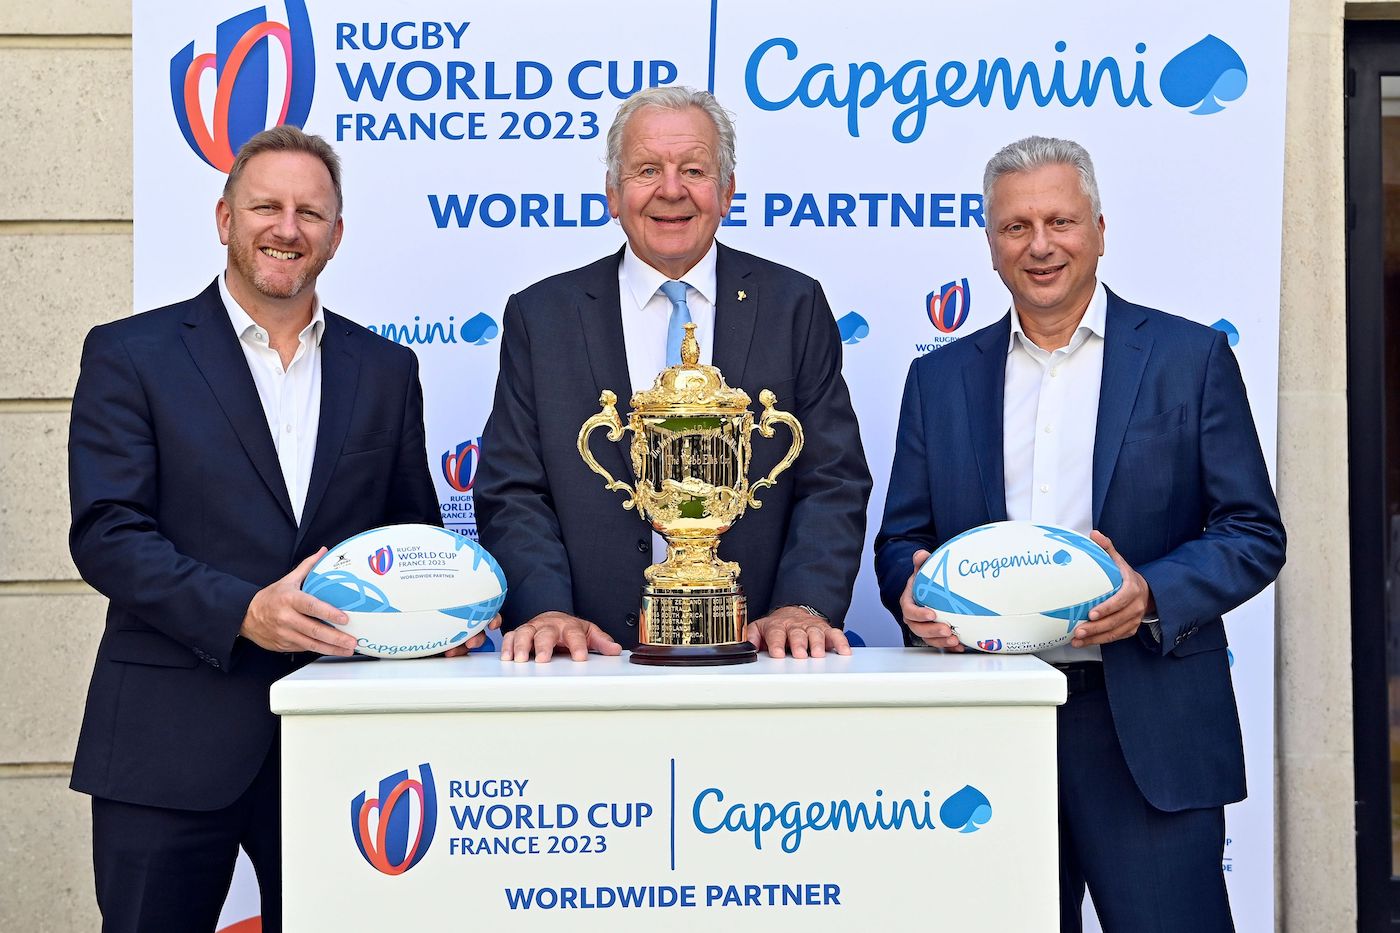 World Rugby and Capgemini